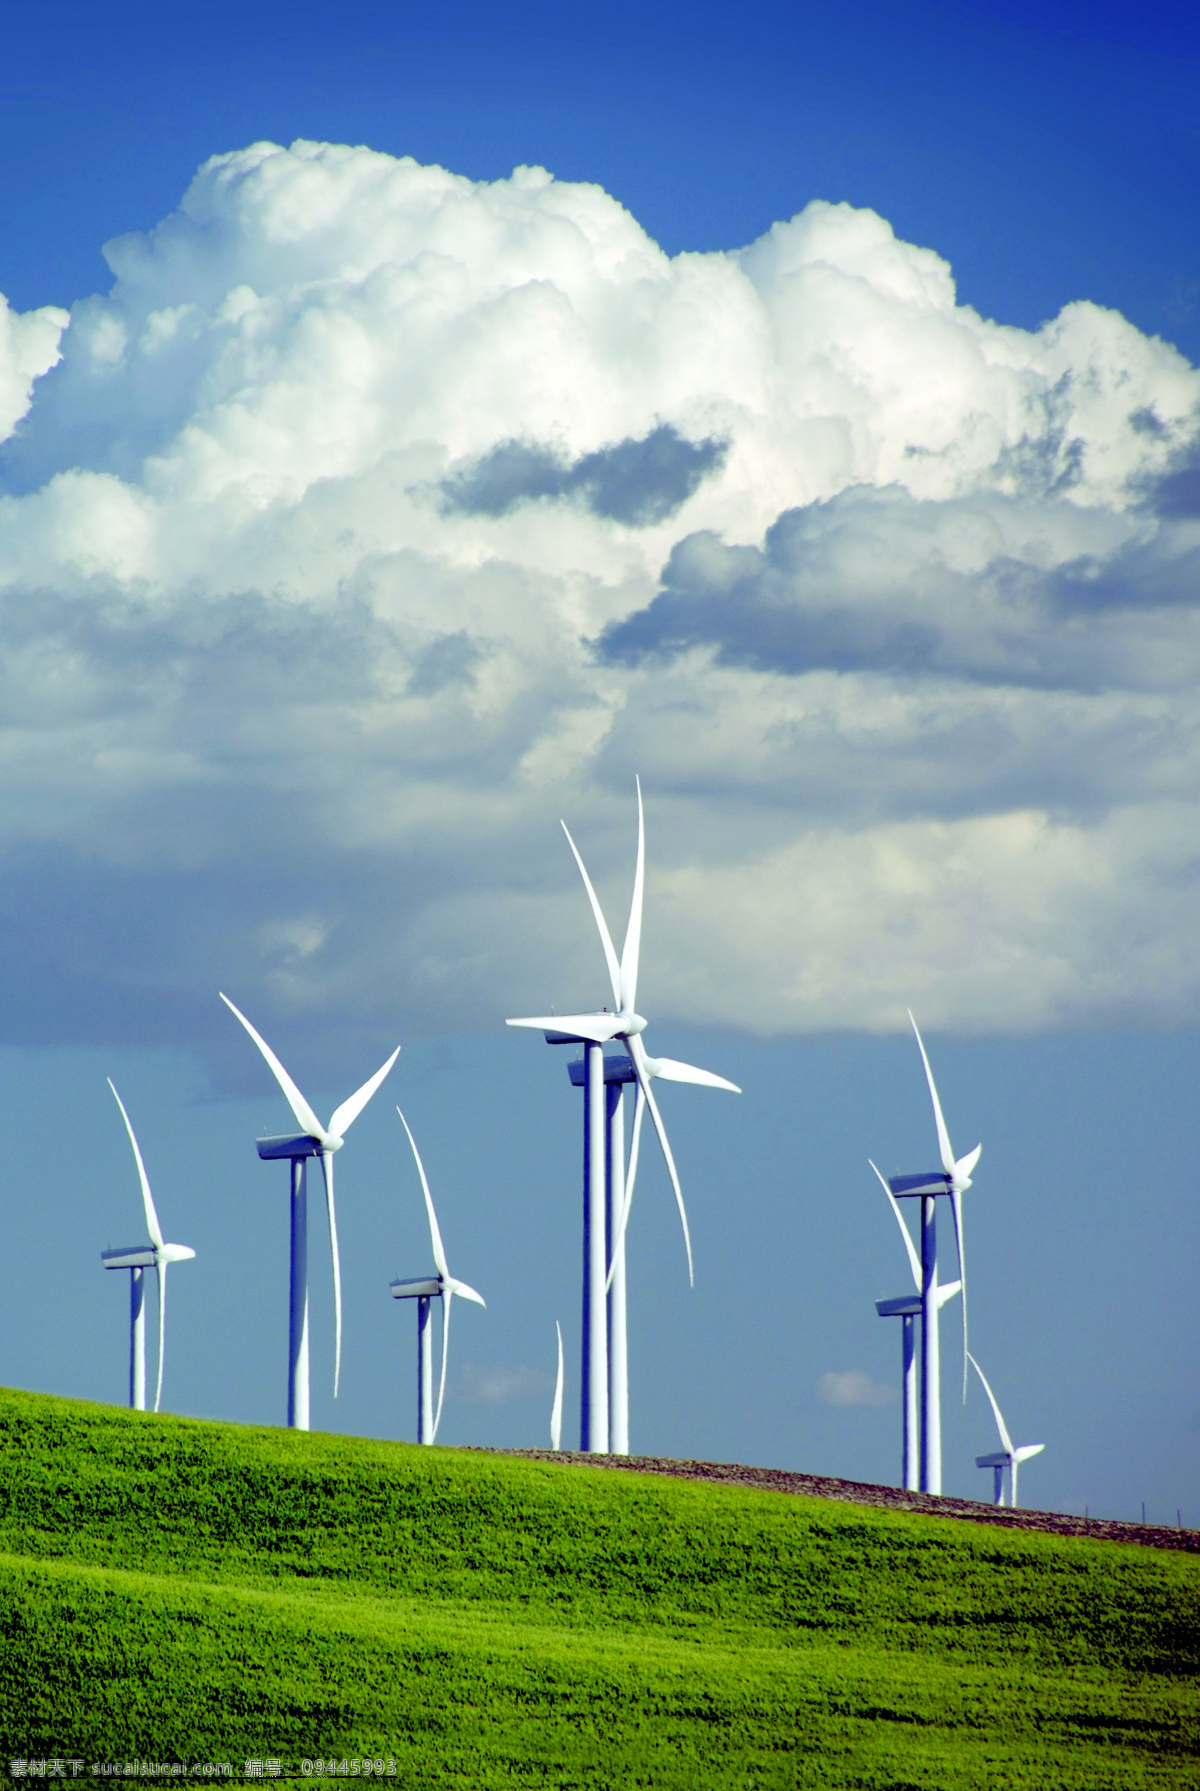 风车图片 风车 风力能源 风电 工业 清洁能源 低碳 天空 草地 电力 风力发电 云 印刷图片 重工业图片 工业生产 现代科技